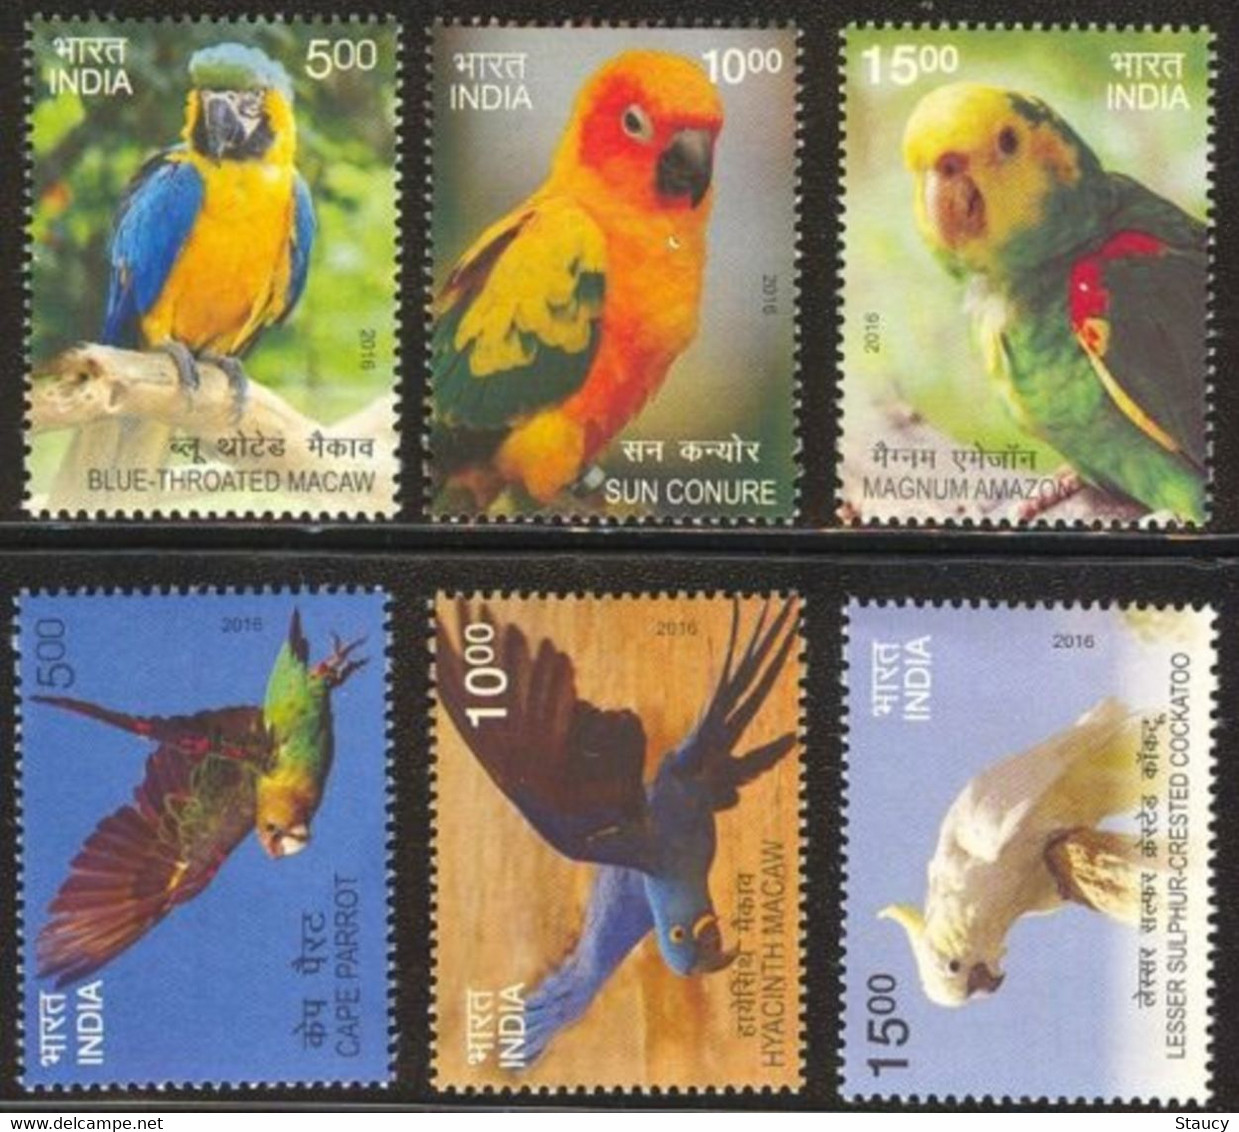 India 2016 Exotic Birds 6v Complete Set MNH Macaw Parrot Amazon Crested, As Per Scan - Koekoeken En Toerako's